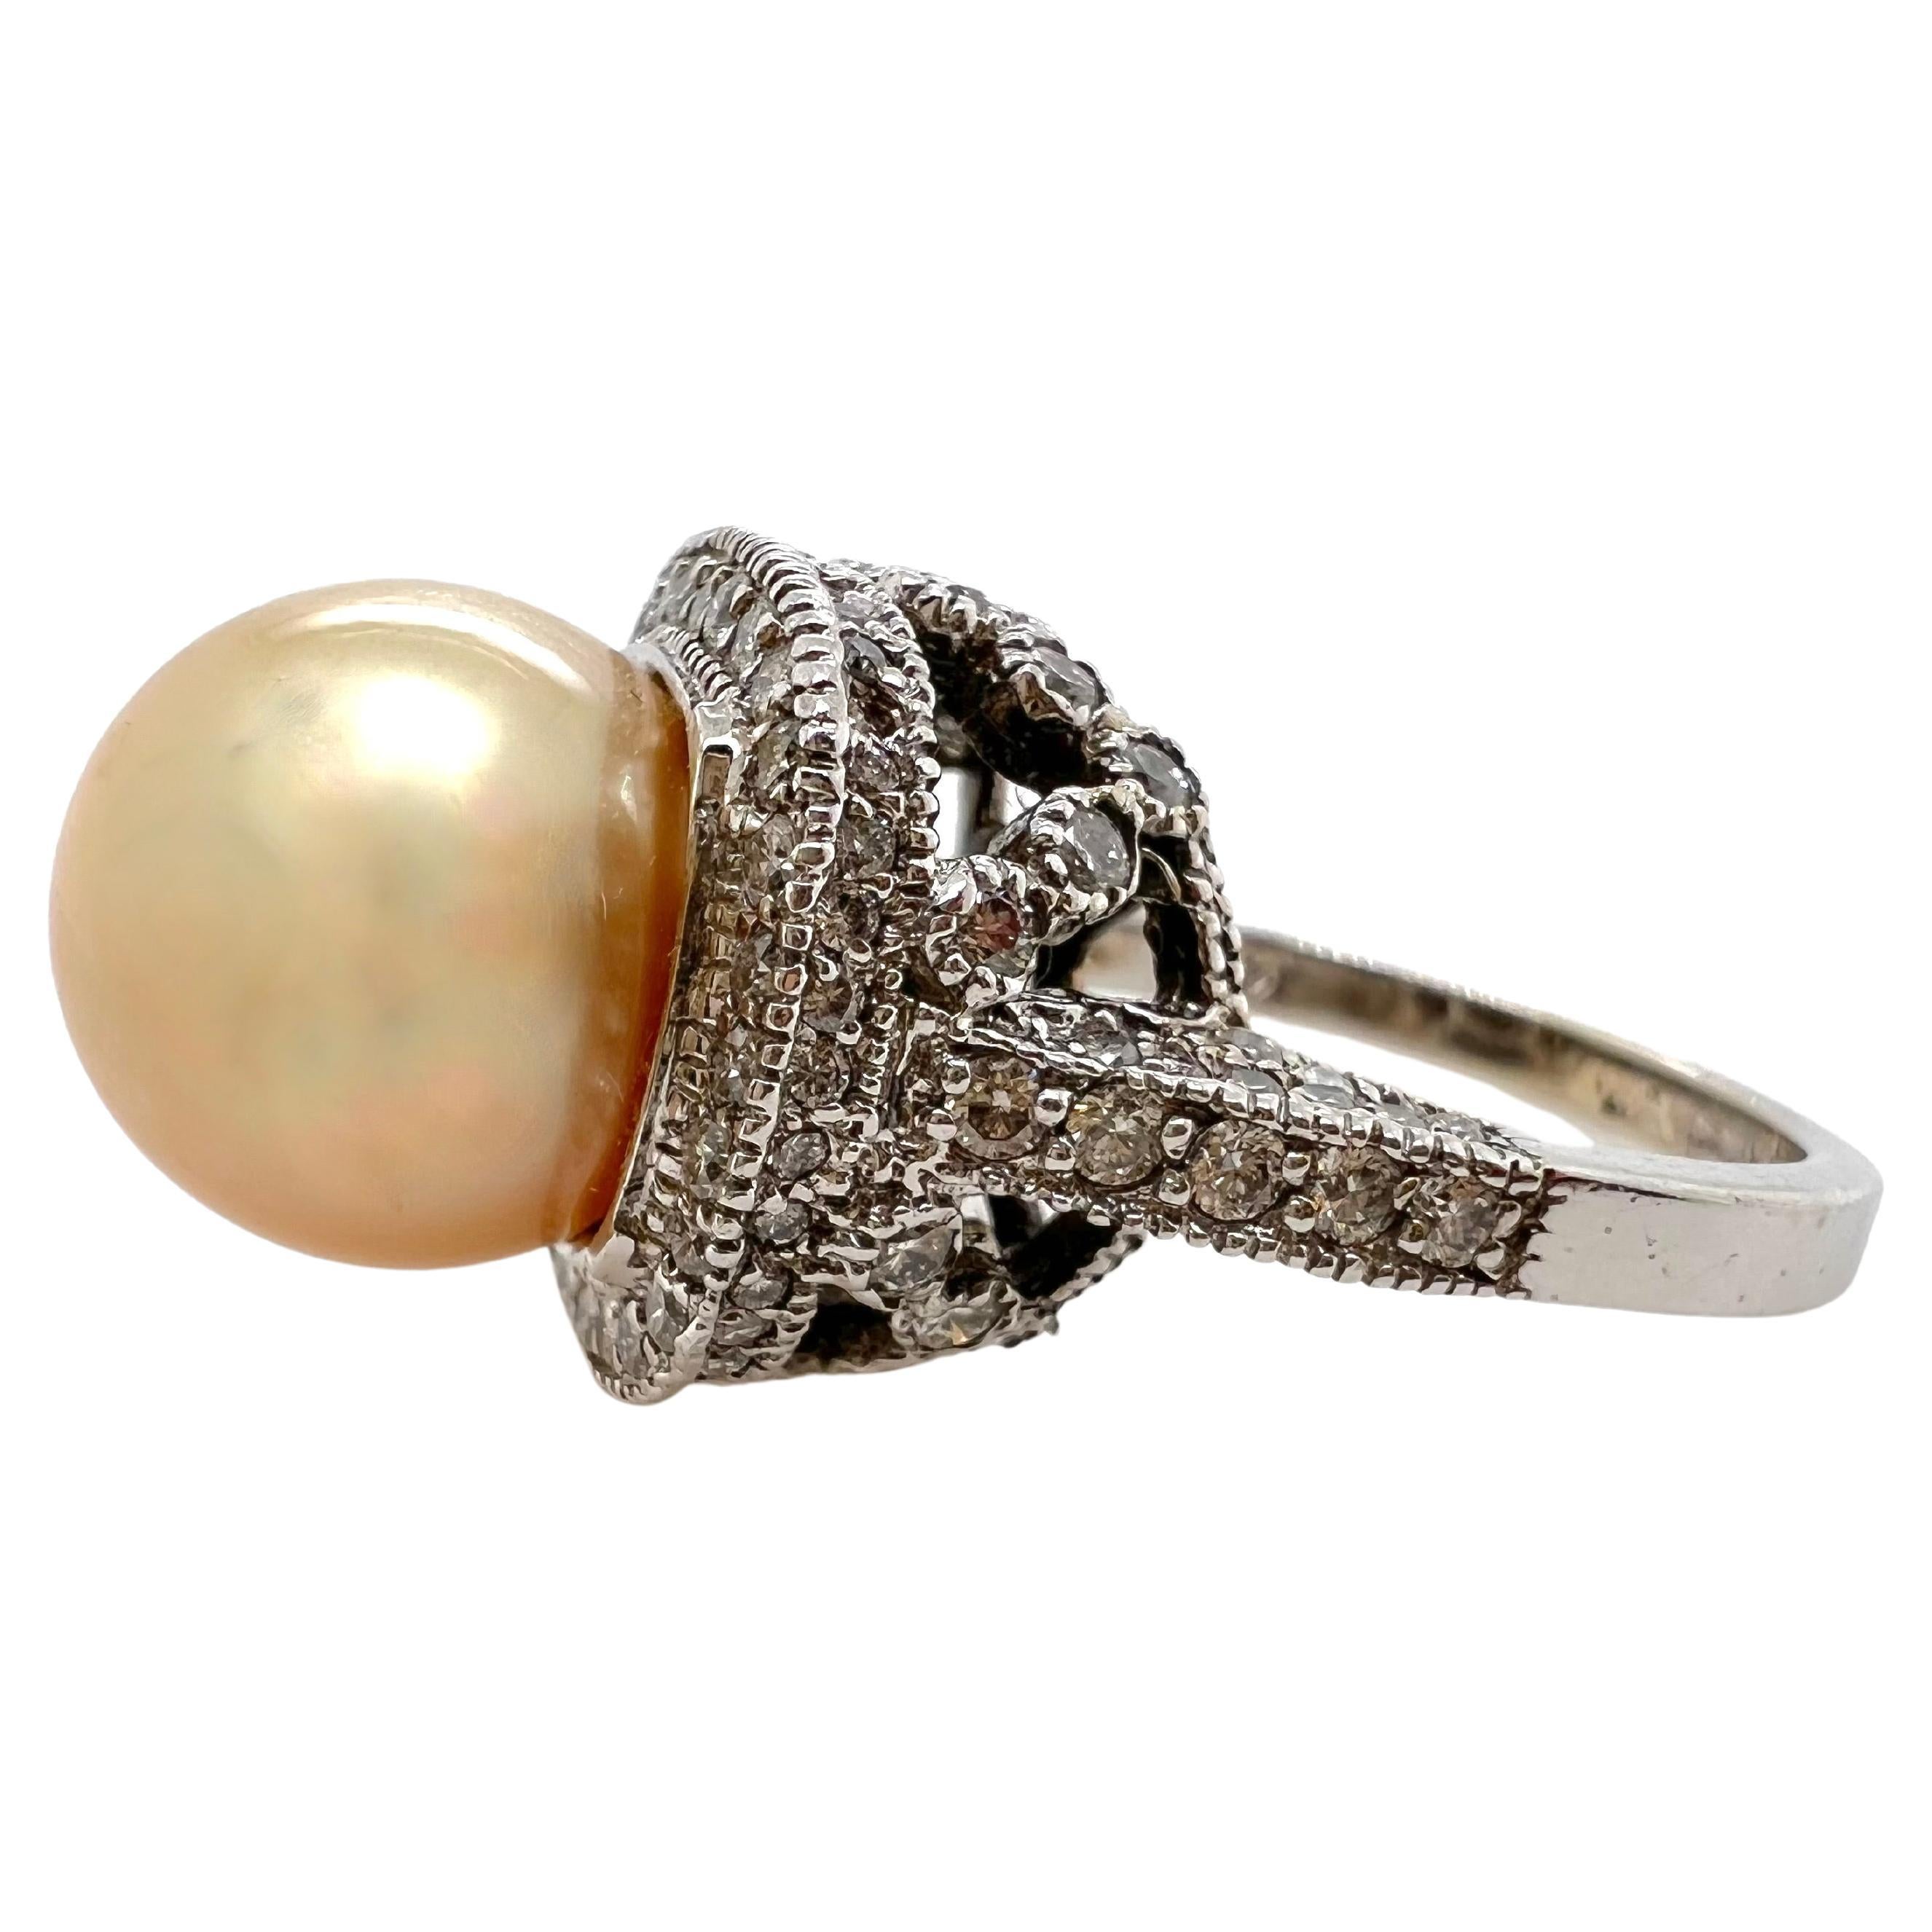 Cette magnifique perle dorée des mers du Sud est posée sur un lit de diamants dans cette monture artistique qui accentue le lustre et la couleur de la perle.  La perle mesure 11,50 mm et repose sur une belle monture avec des diamants sur le profil